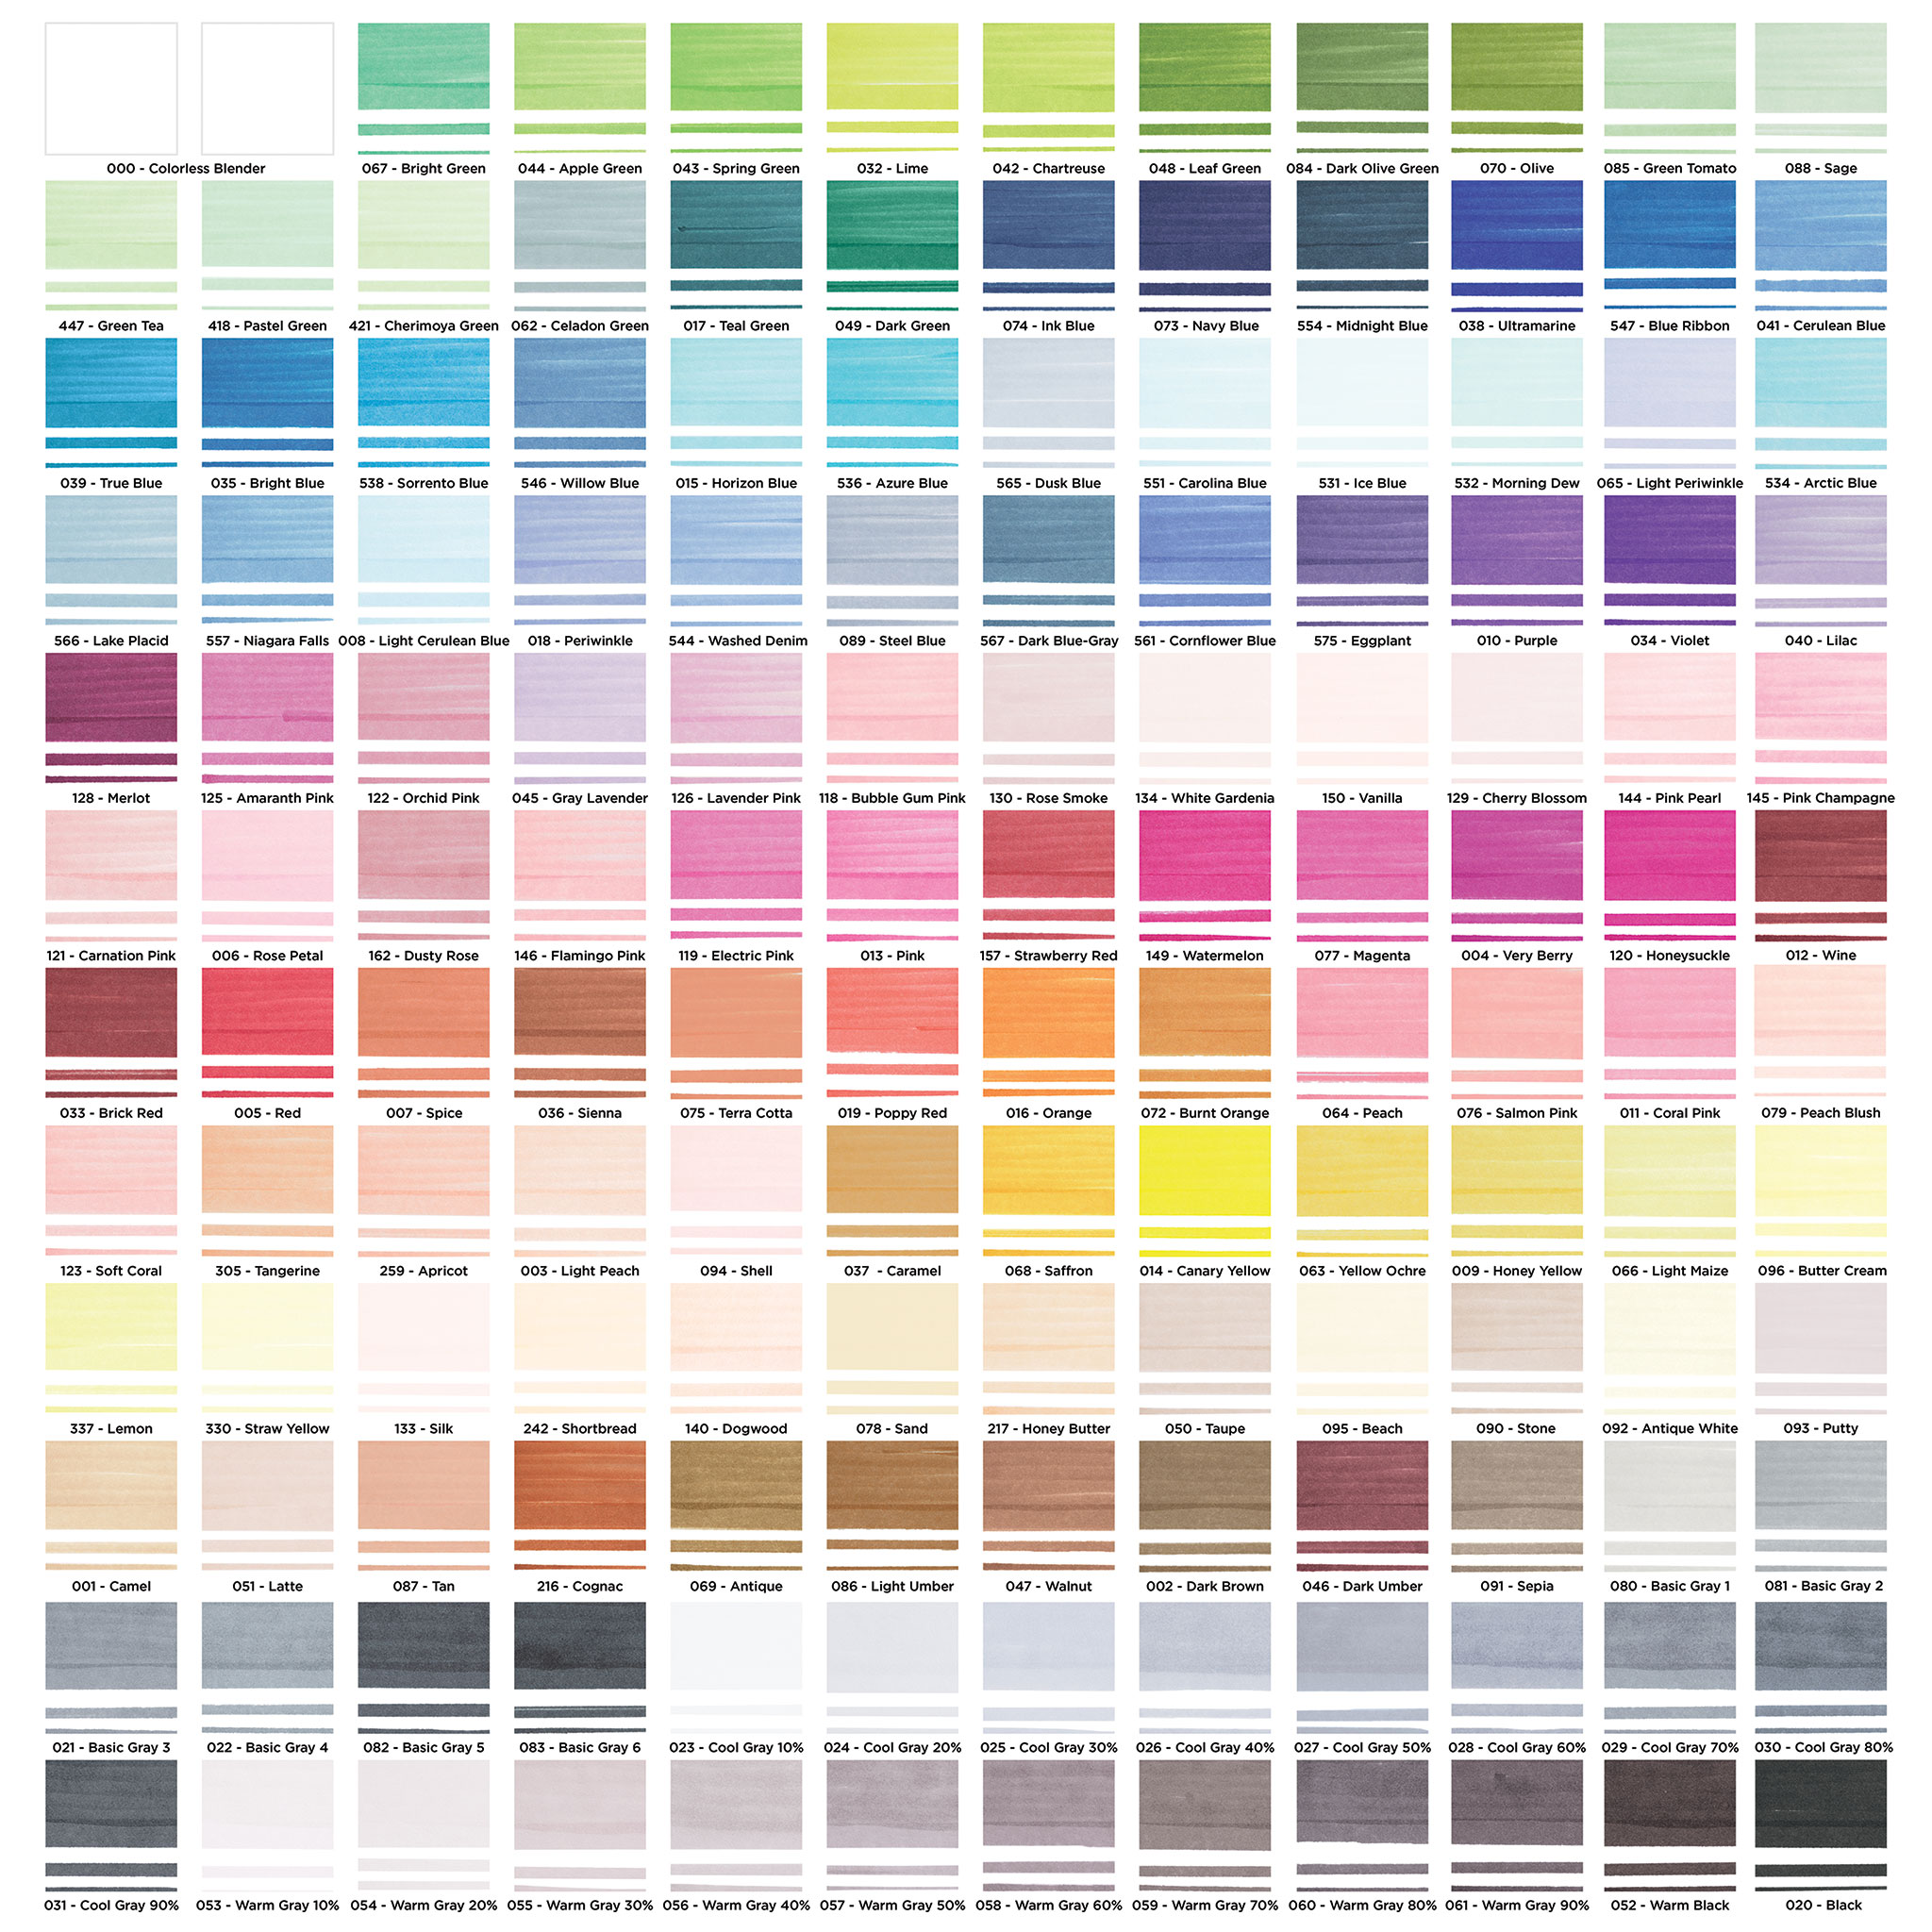 Blick Studio Brush Marker Filled Color Sheet by deure1 on DeviantArt